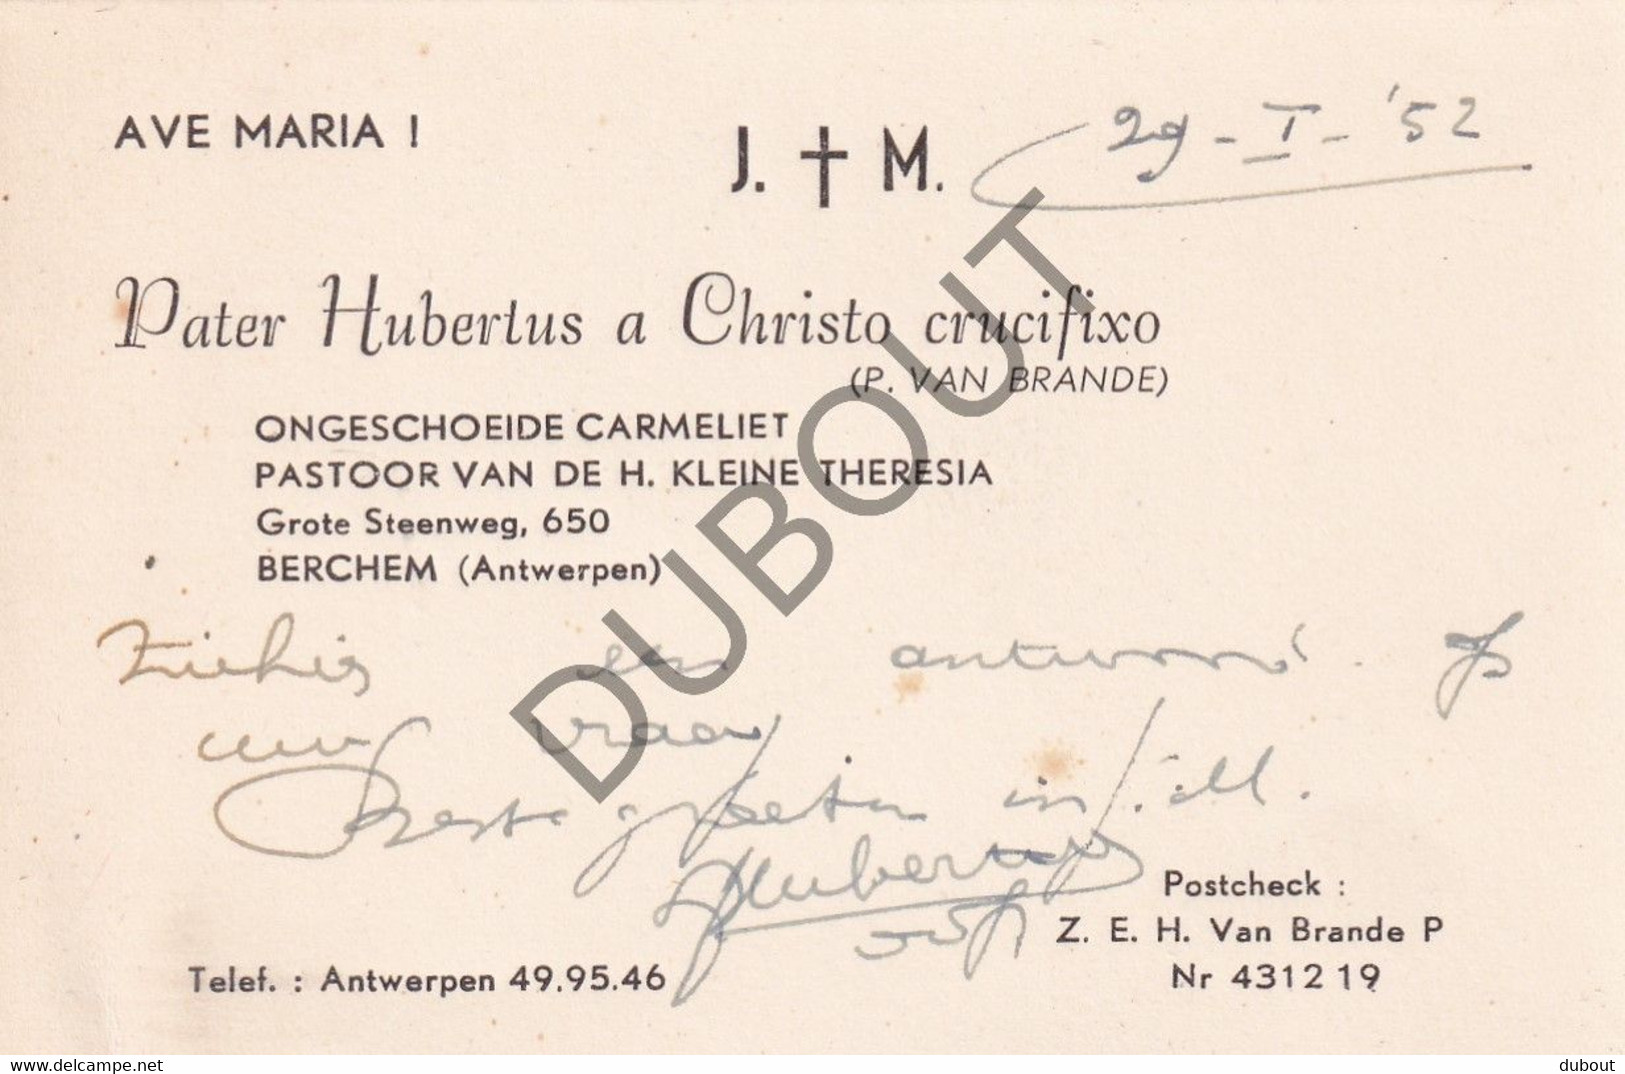 Karmelieten: Orde Onze Lieve Vrouw Van Den Berg Carmel - P. Andreas, Vertaald Door Priester Klep - 1914  (S288) - Anciens